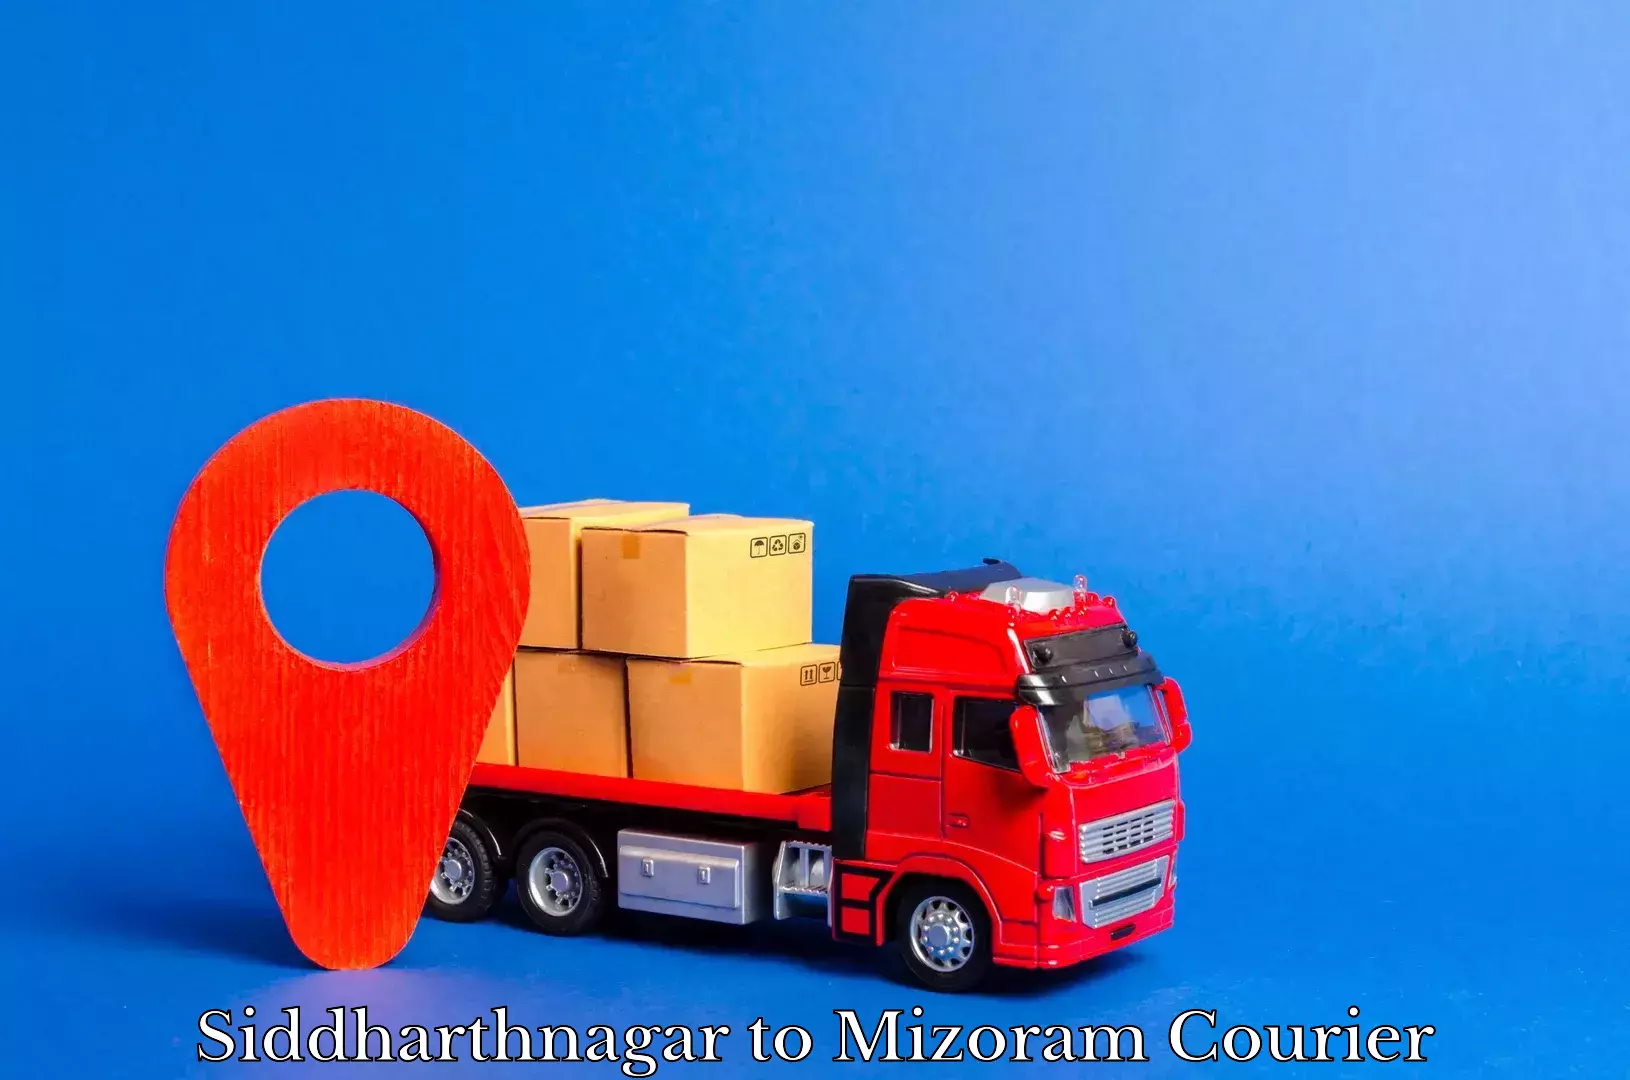 Next-generation courier services Siddharthnagar to Mizoram